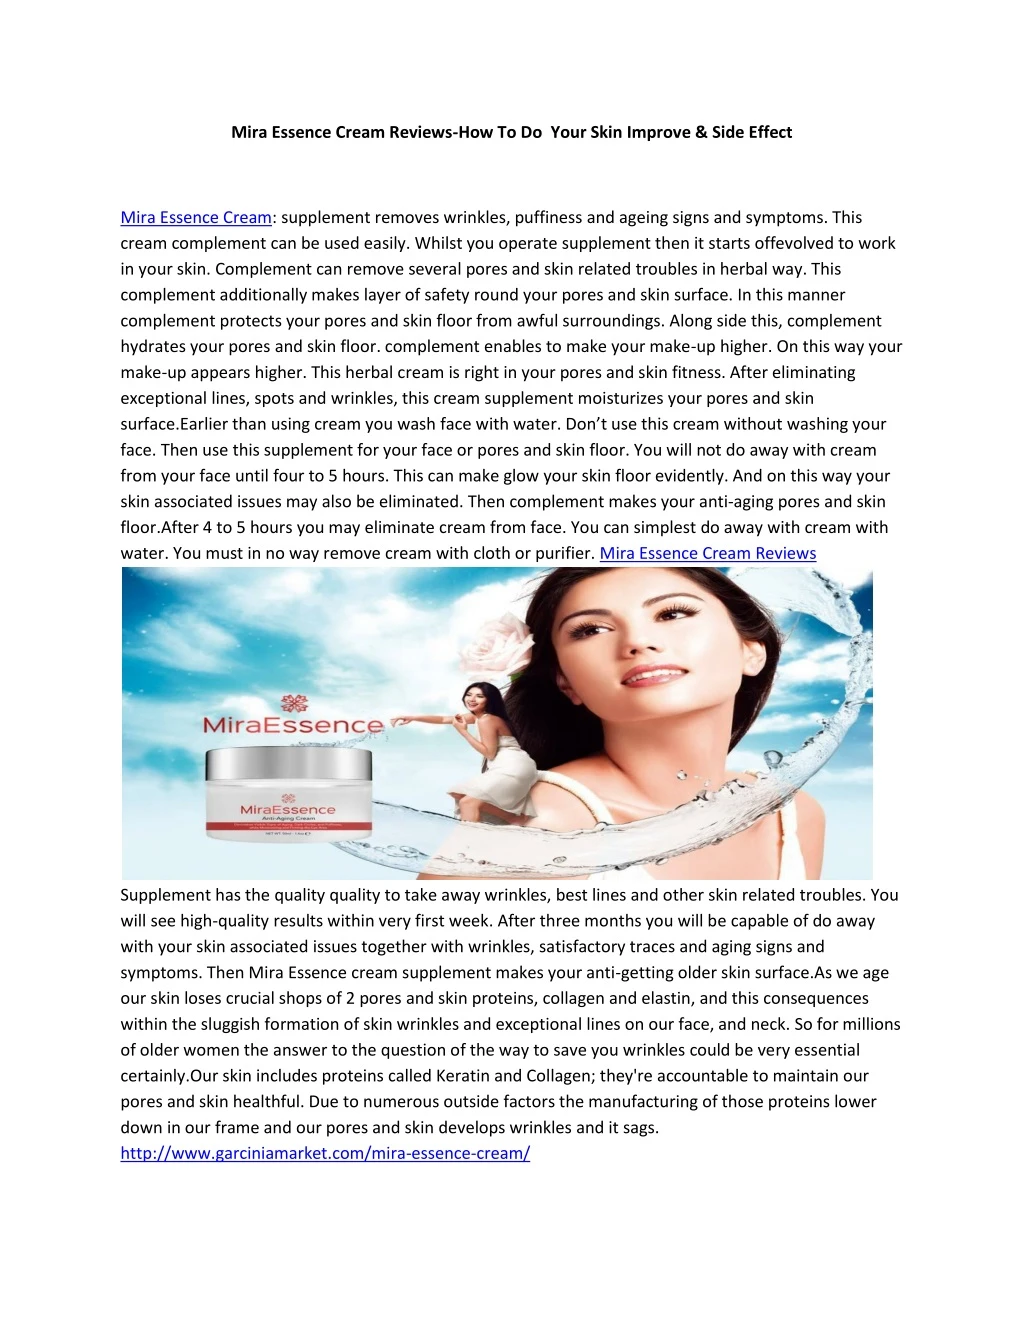 mira essence cream reviews how to do your skin